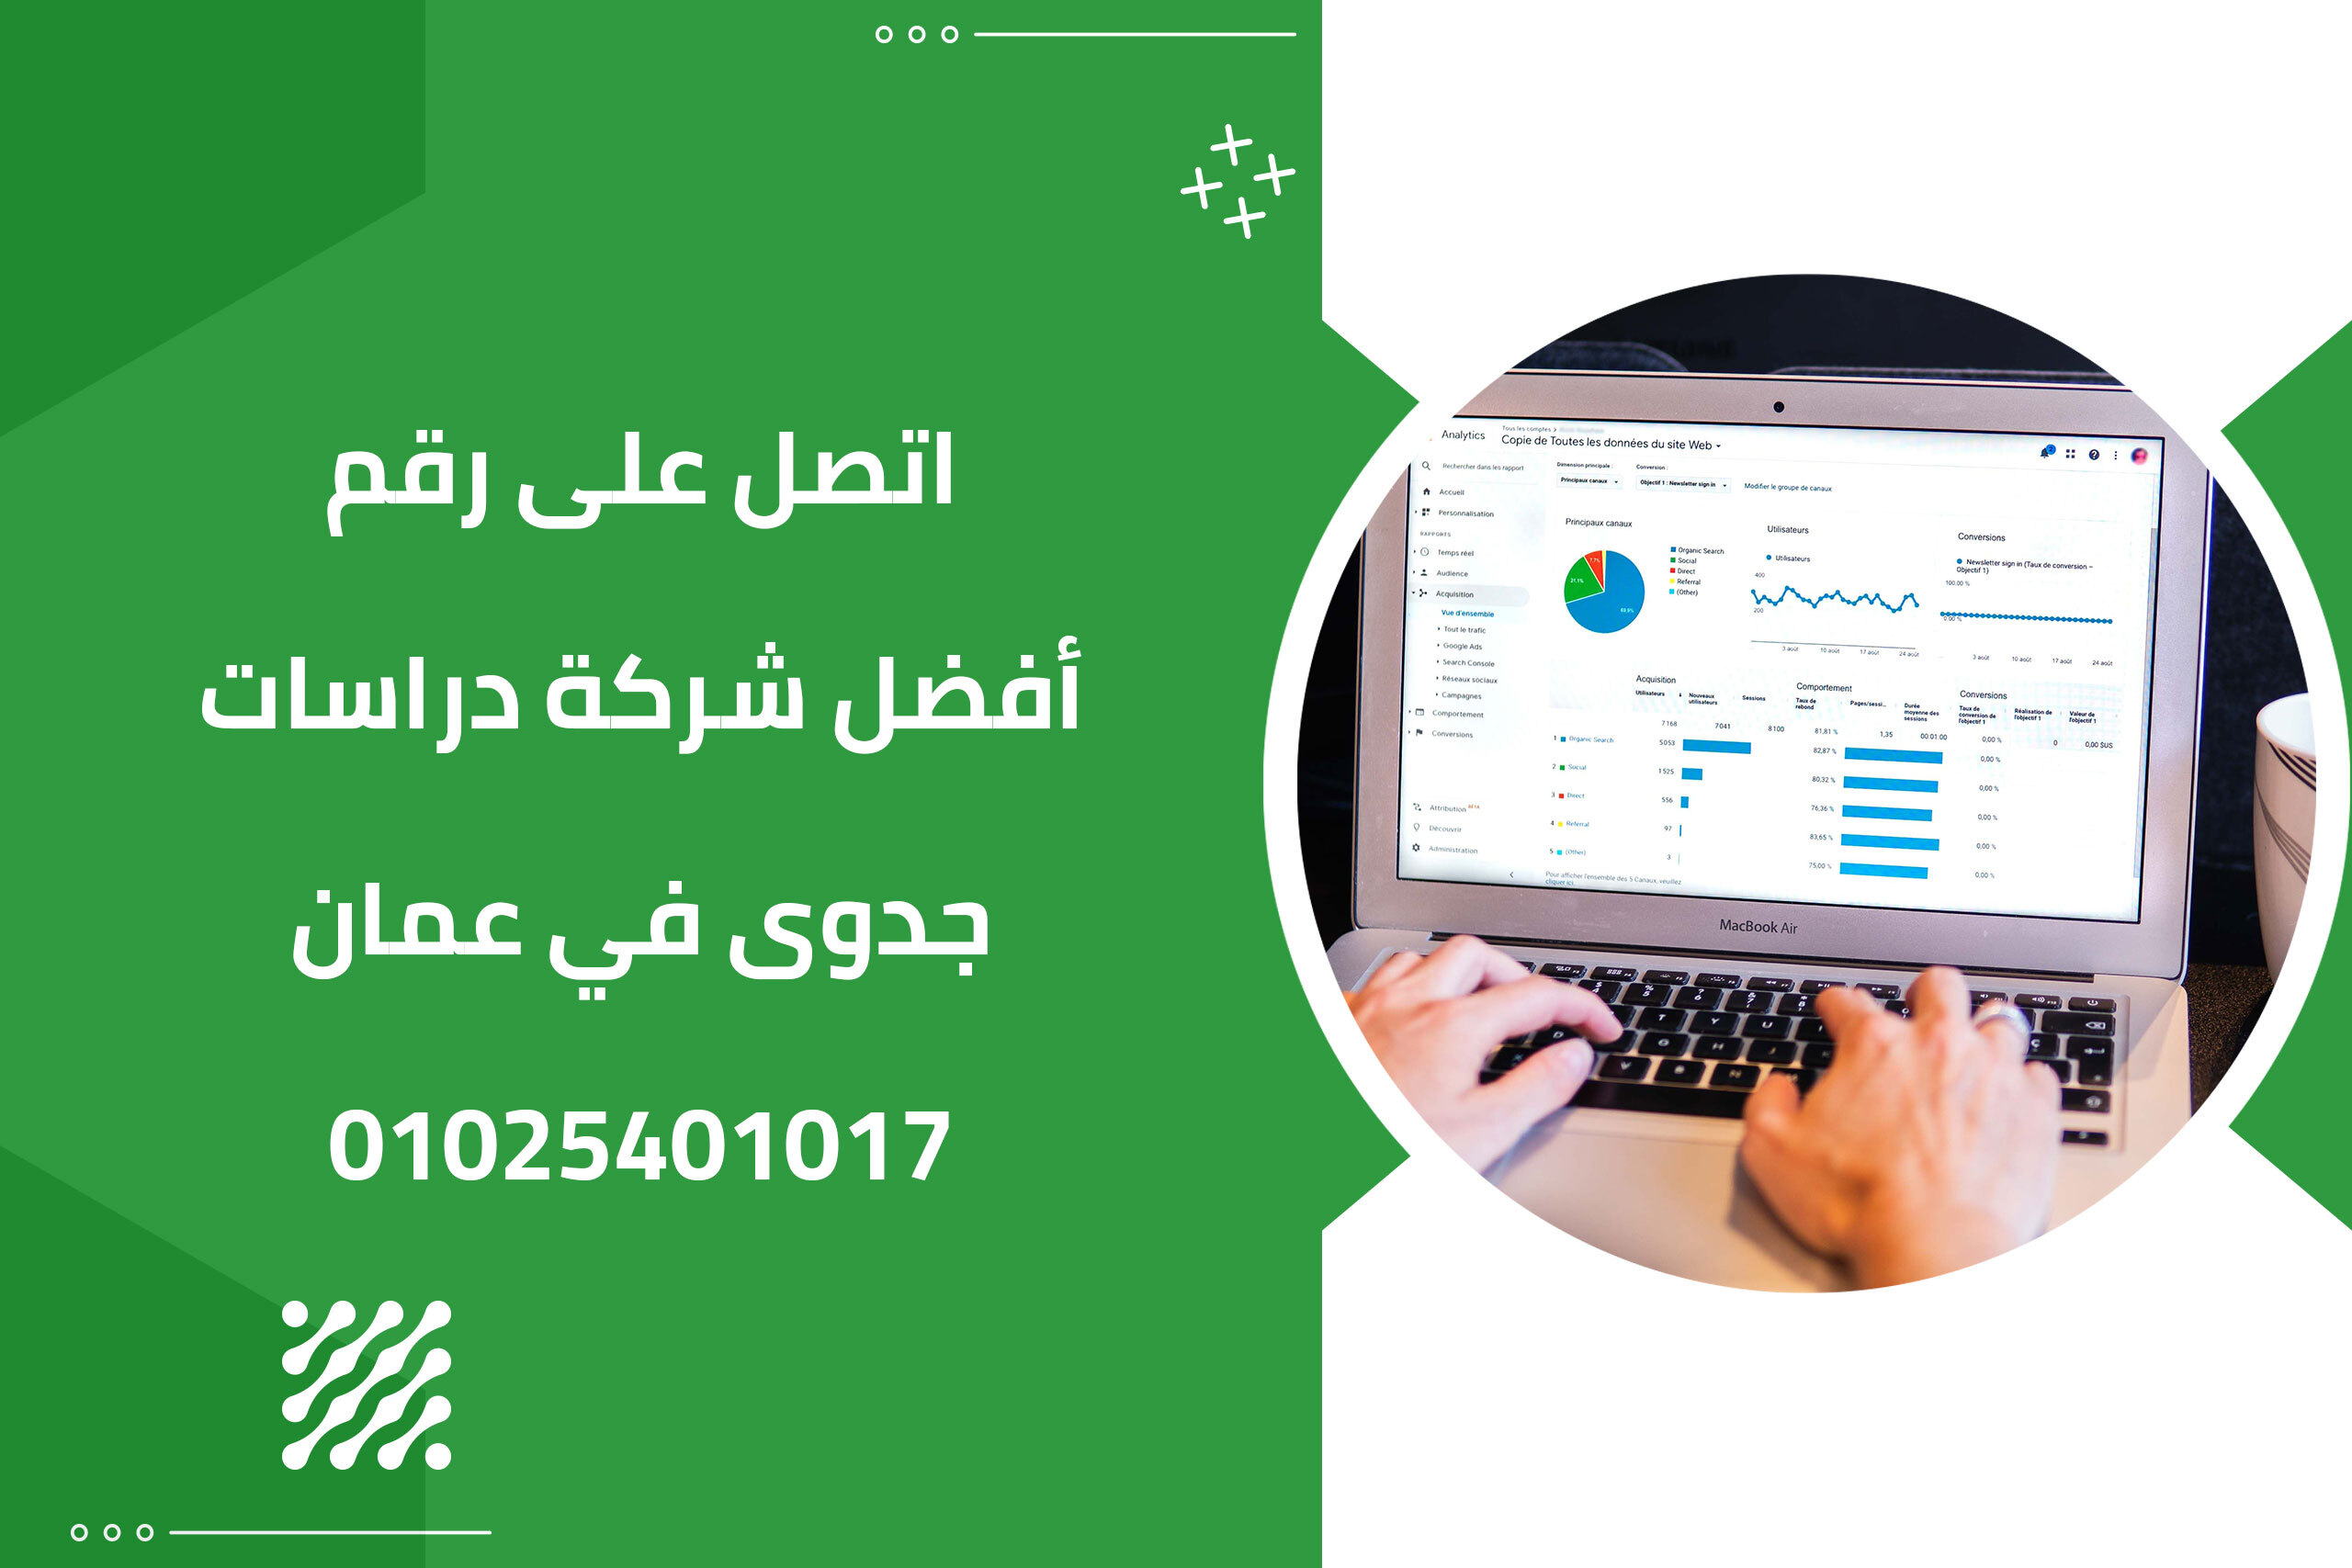 اتصل على رقم أفضل شركة دراسات جدوى في عمان 01025401017